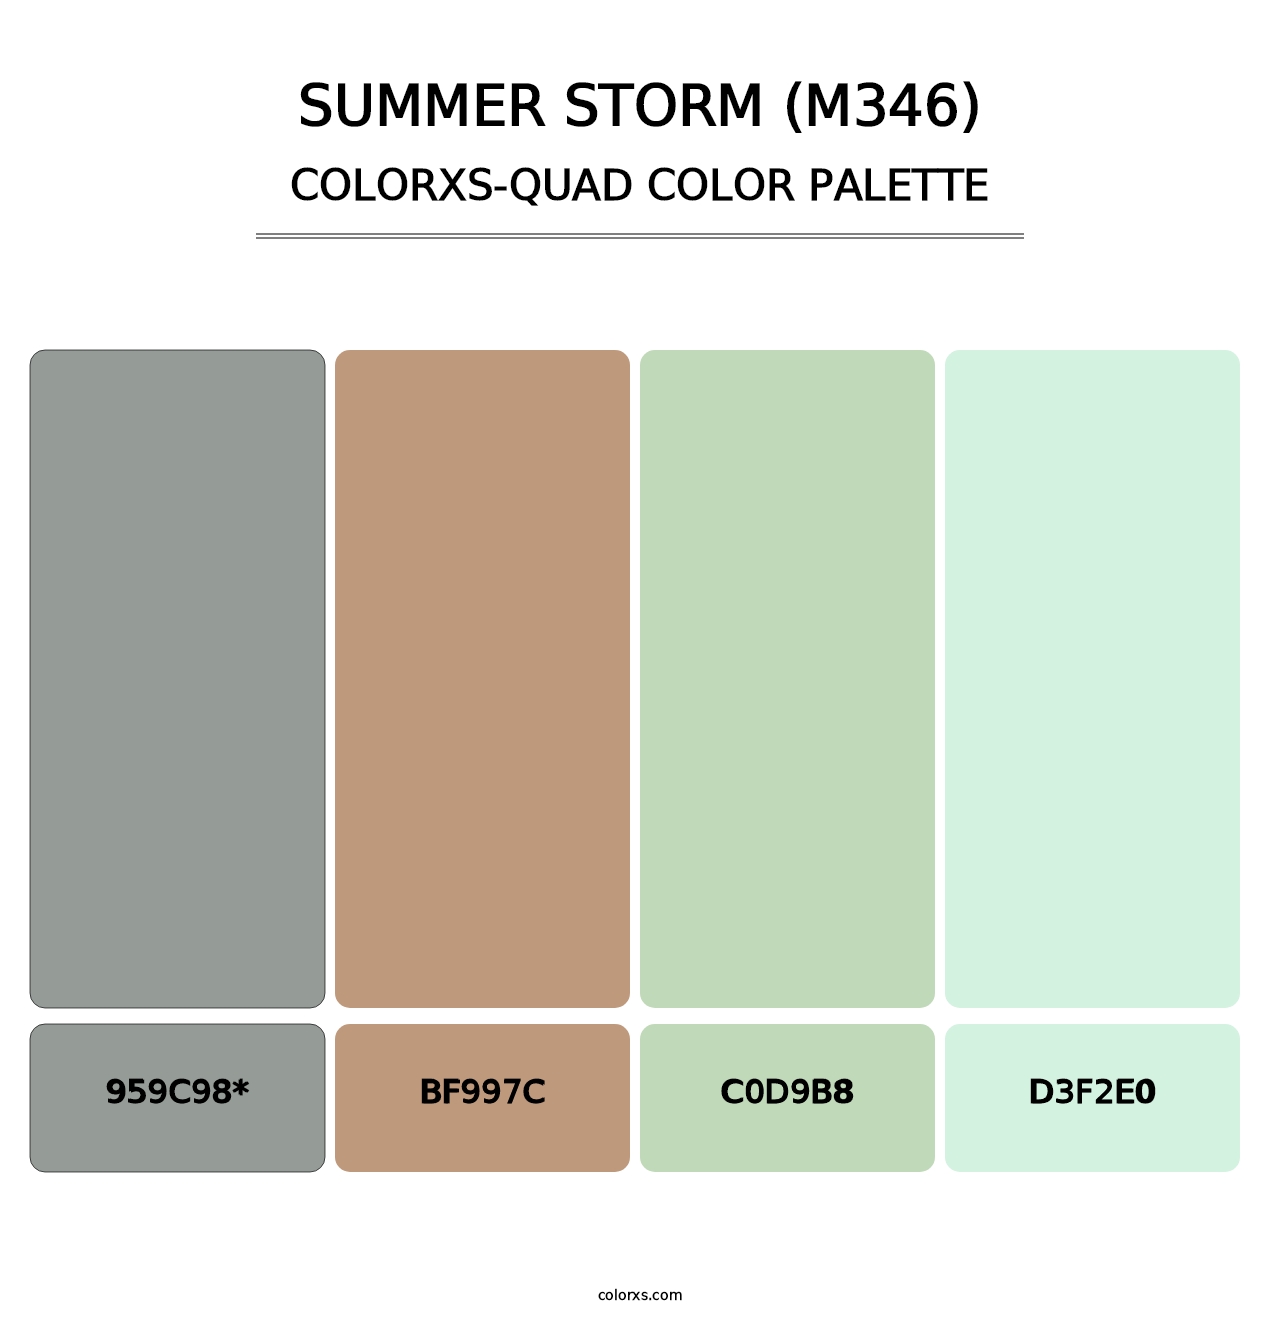 Summer Storm (M346) - Colorxs Quad Palette